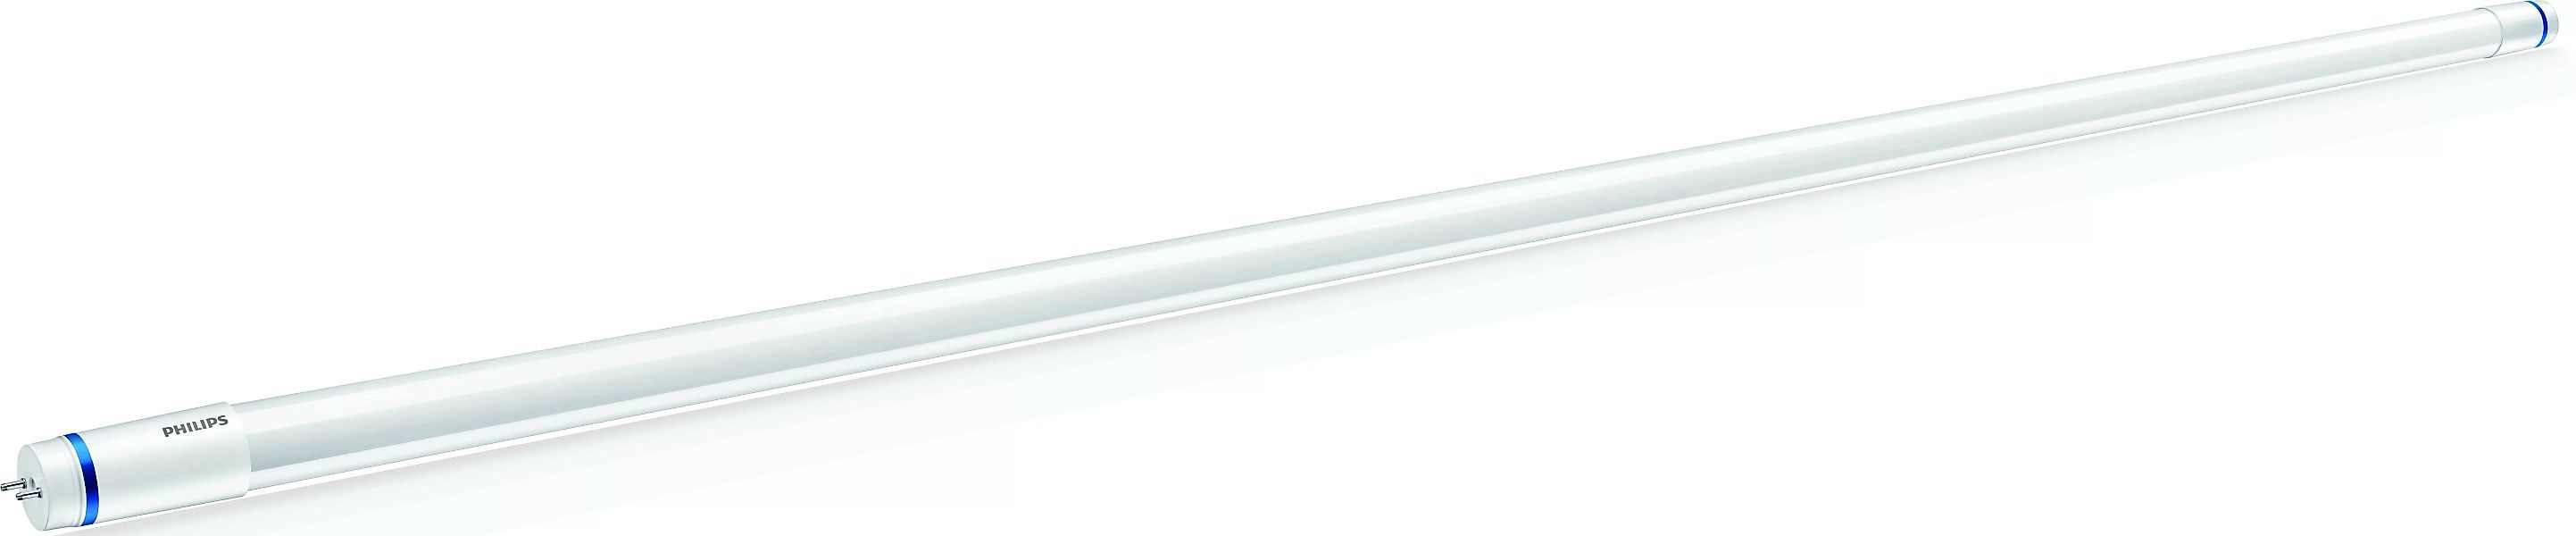 Philips Lighting LED-Tube T8 KVG/VVG G13, 865, 600mm MLEDtube #69751100 günstig online kaufen